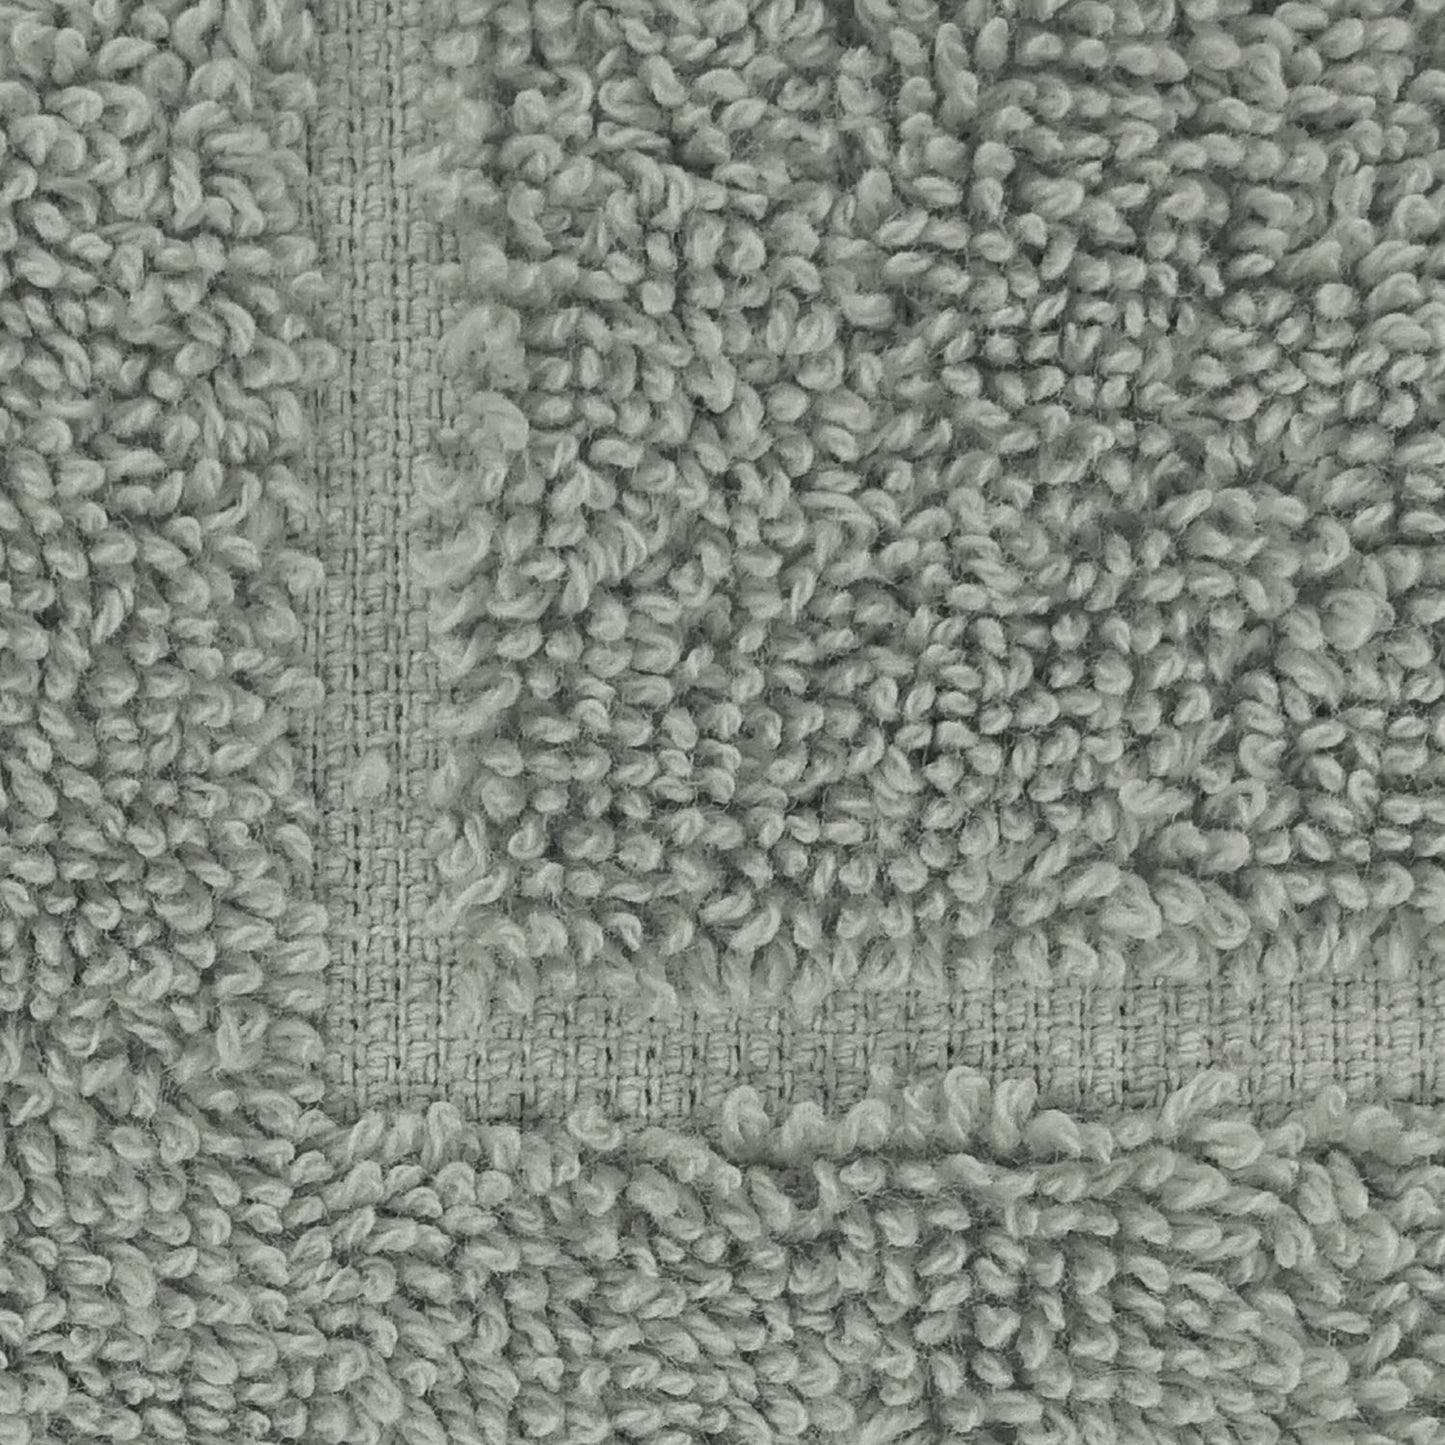 Frottier Handtuch 'Enrico' | 50 x 100 cm | 100% Baumwolle | in verschiedenen Farben